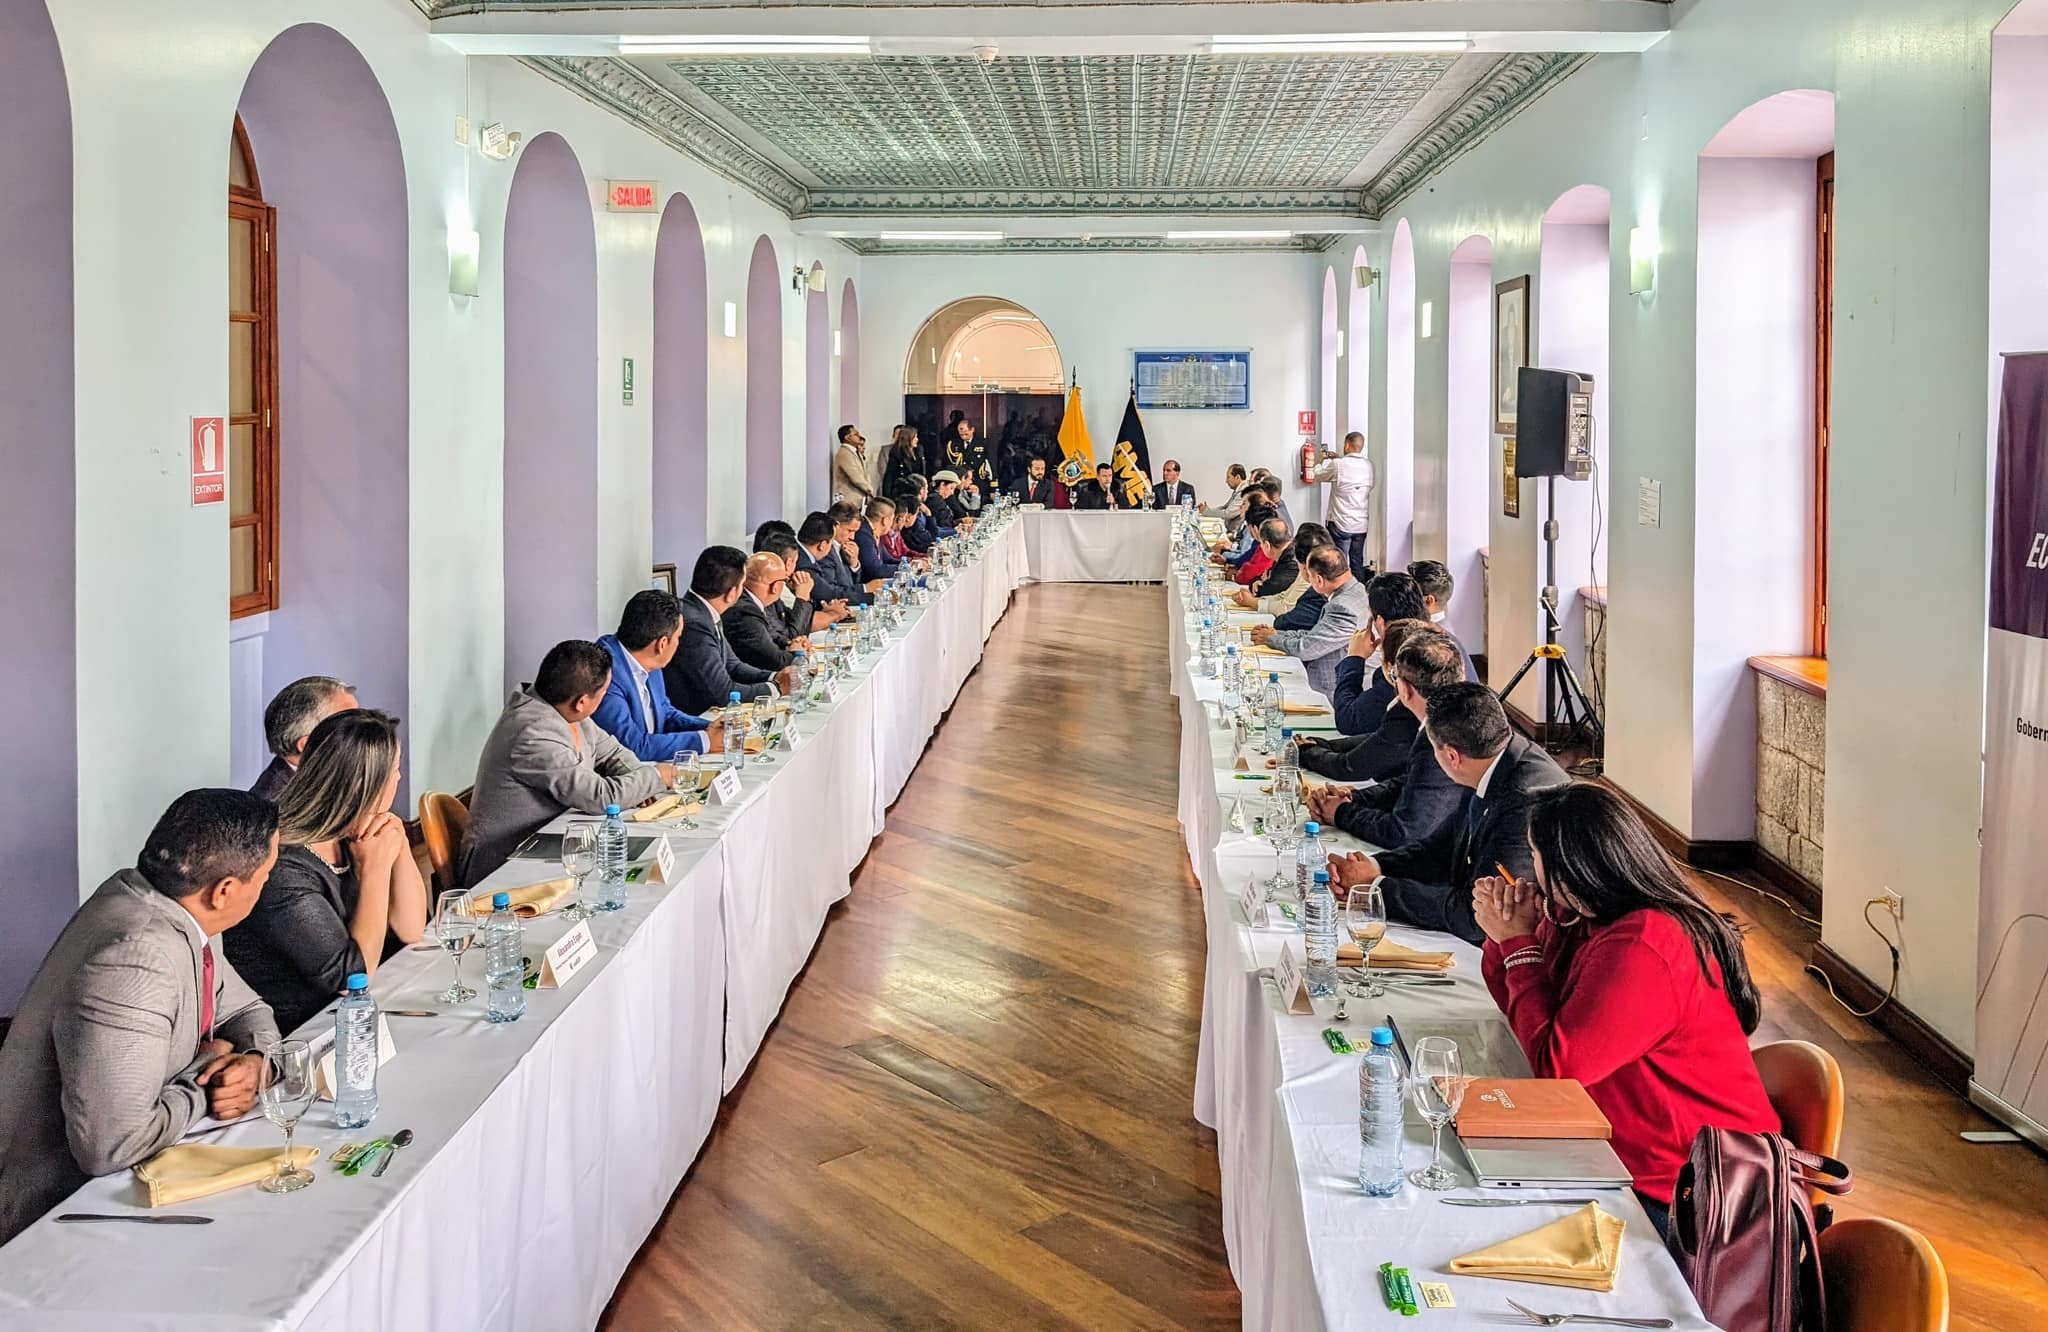 El presidente Daniel Noboa visitó la Gobernación de Tungurahua, donde mantuvo una reunión de trabajo con las principales autoridades gubernamentales de la provincia y la Asociación de Municipalidades Ecuatorianas AME, pertenecientes a la Zona 3.